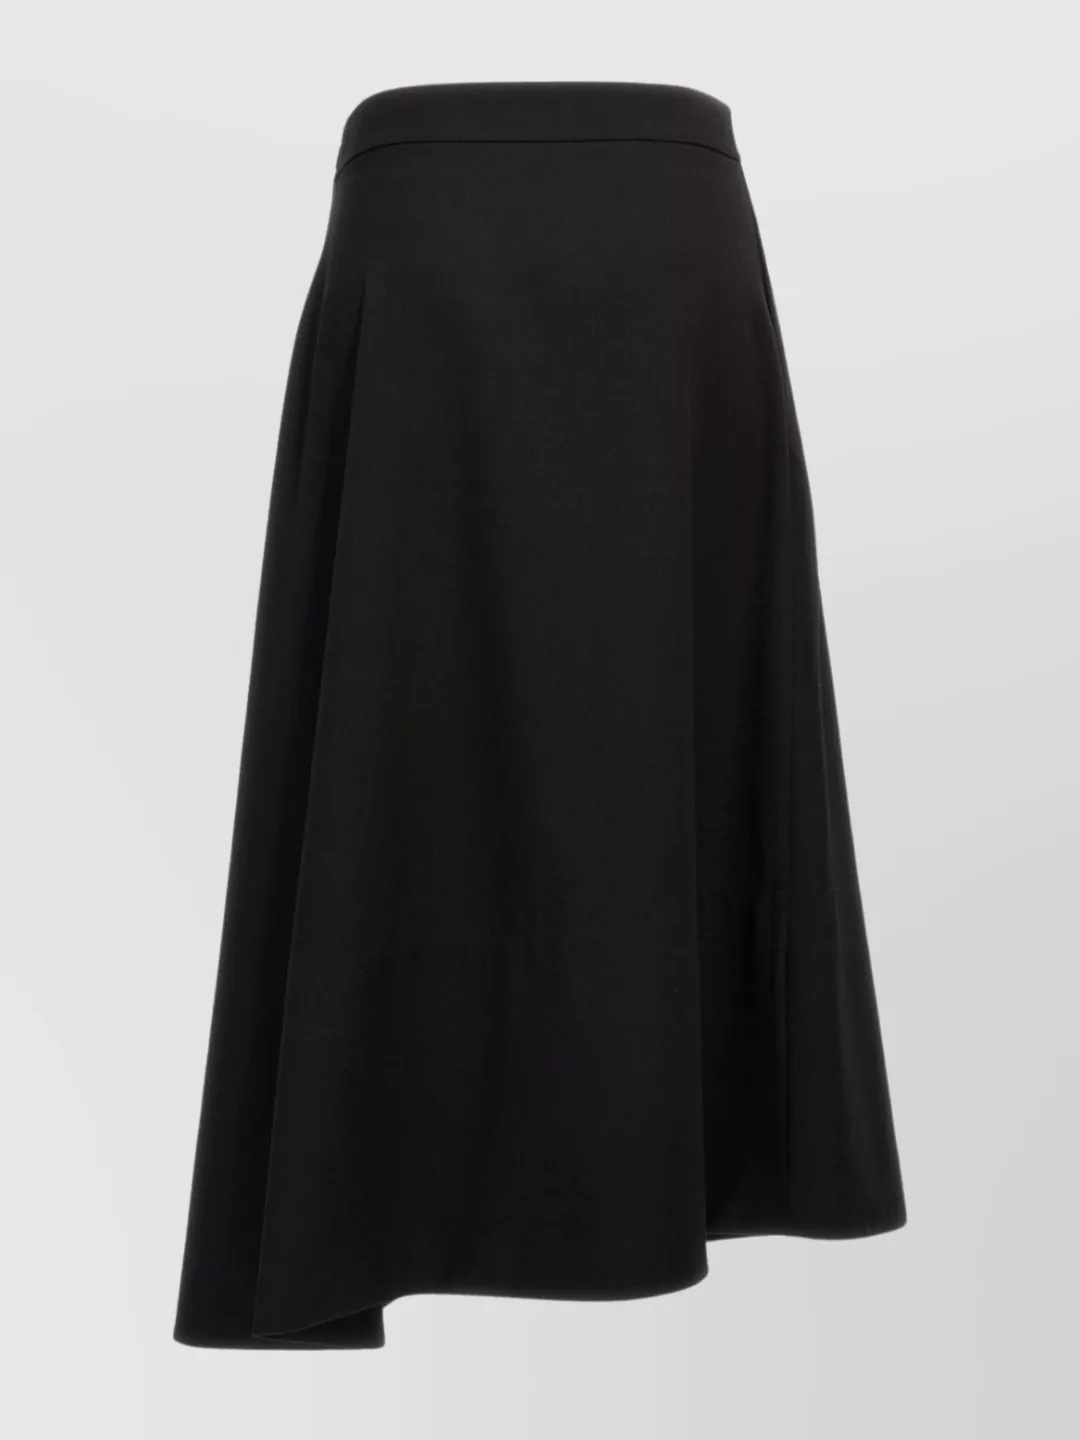 Jil Sander Asymmetrical Hemline Skirt For A Luxury Brand